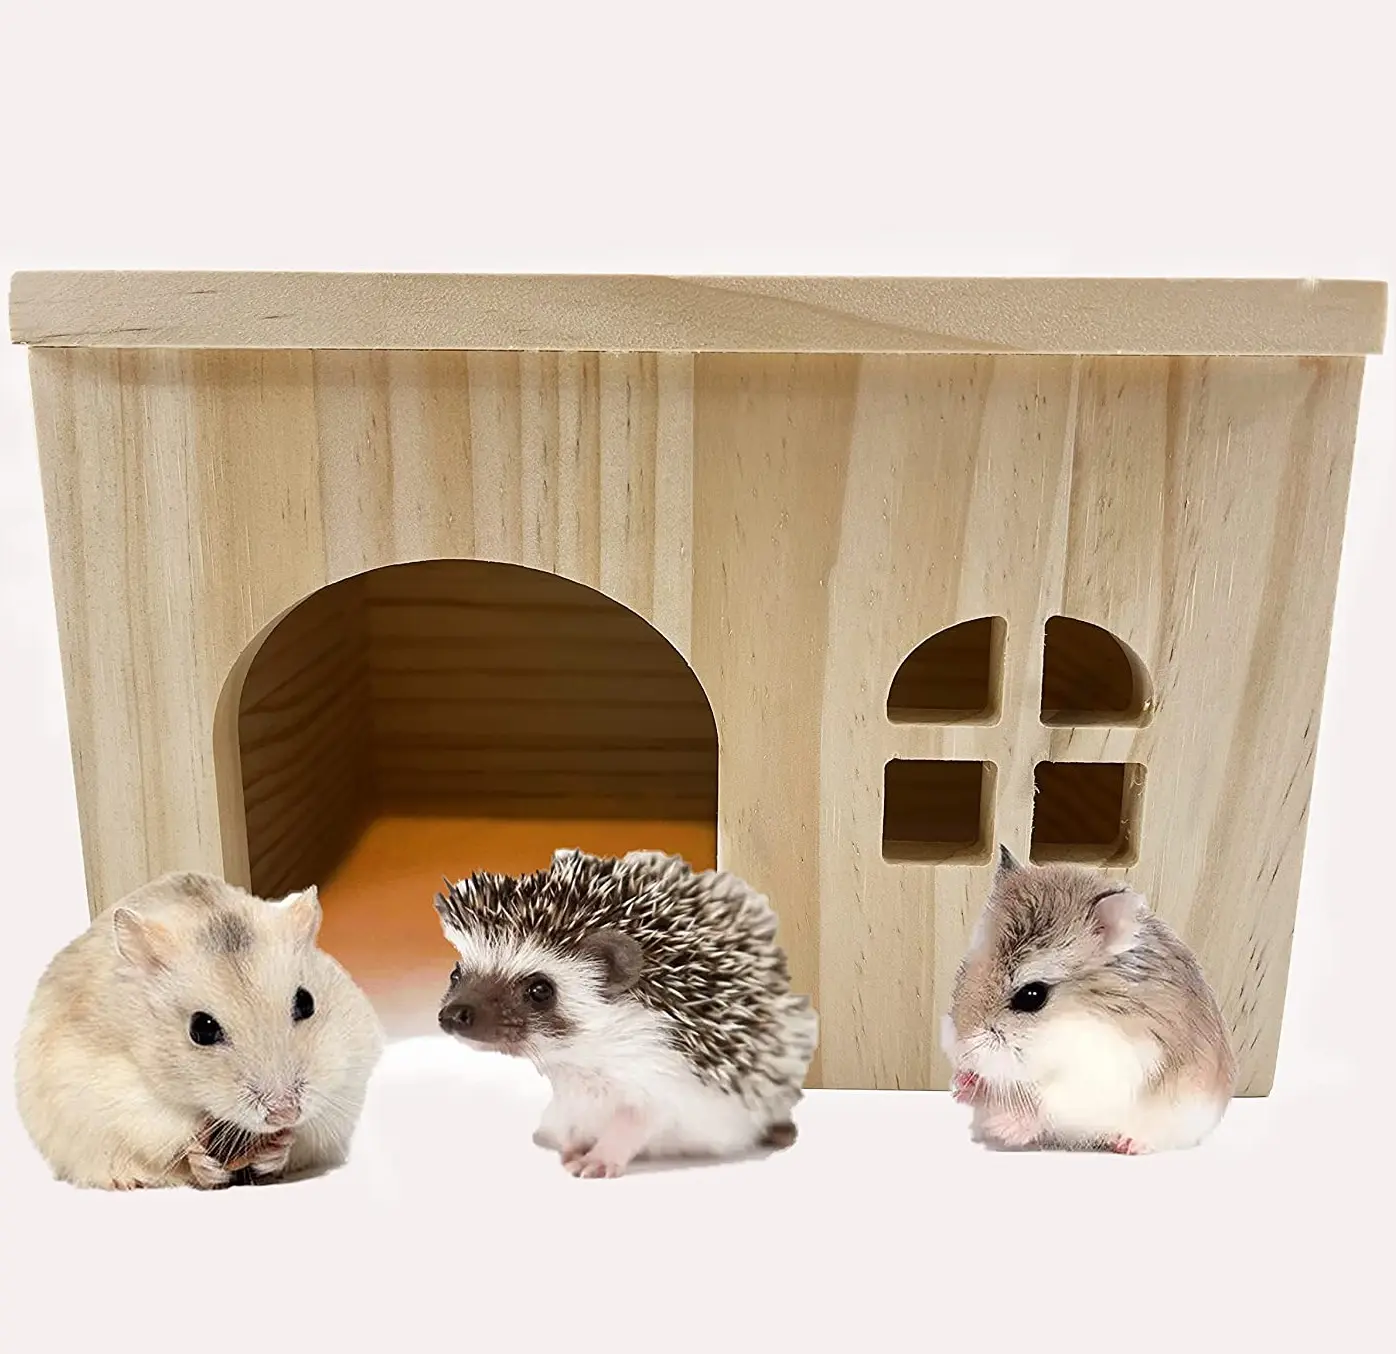 Maison en bois naturel animal de compagnie cochon d'inde Hamster hérisson ou Rat Chipmunk Hamster musulman petits animaux cachette en bois espaces